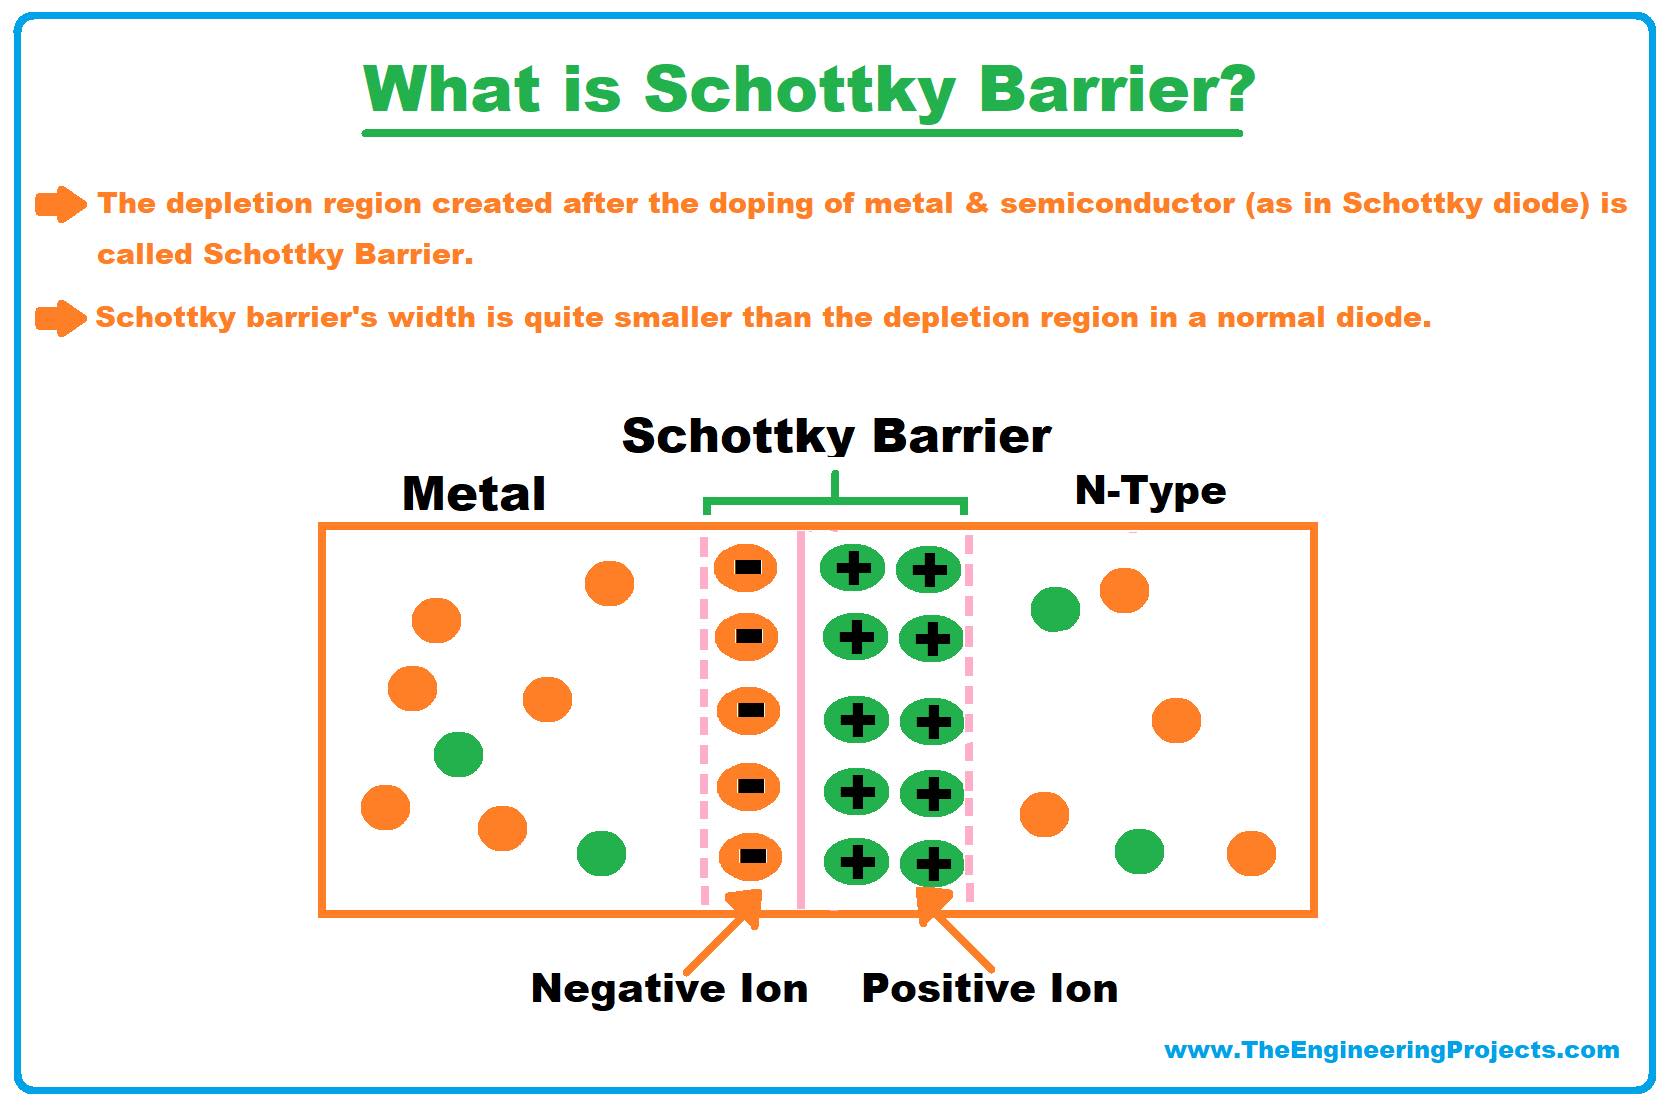 Schottky Diode, Schottky barrier diode, Schottky barrier, Schottky Diode working, Schottky Diode application, applications of Schottky Diode, Schottky Diode advantages, advantages of schottky diode